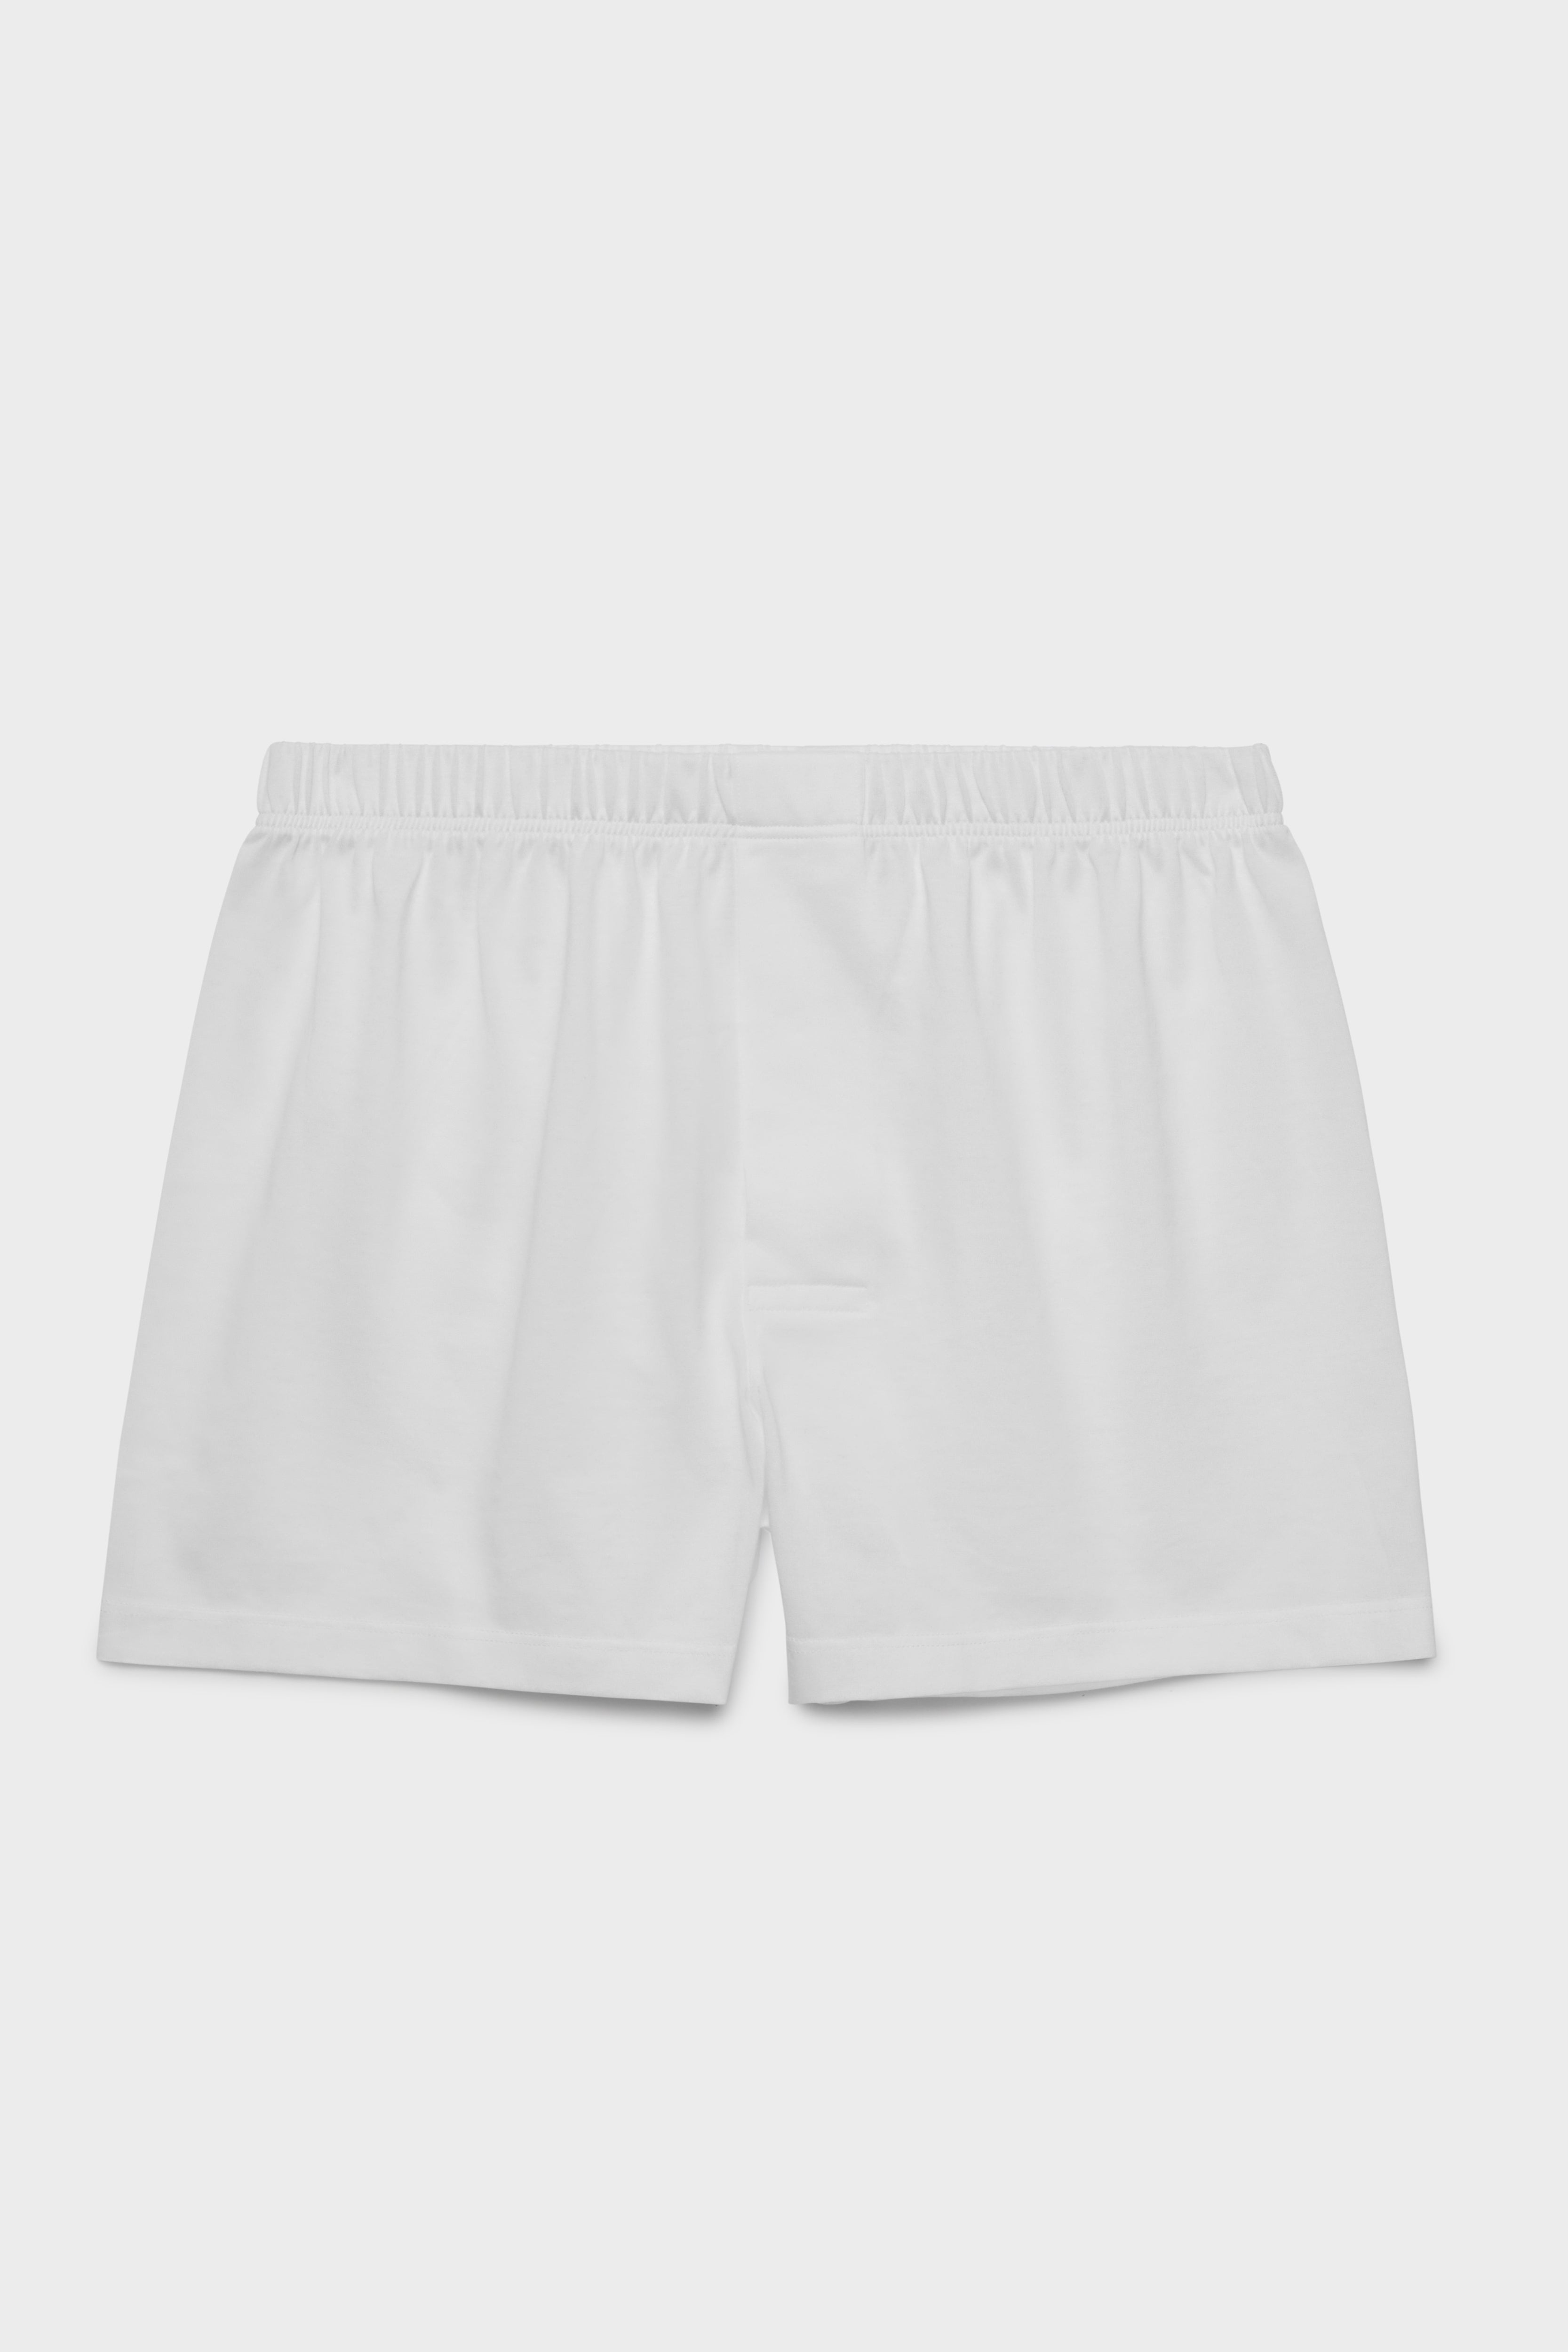 BRESCIANI -men's underwear. Classic Boxers. Cotton. White